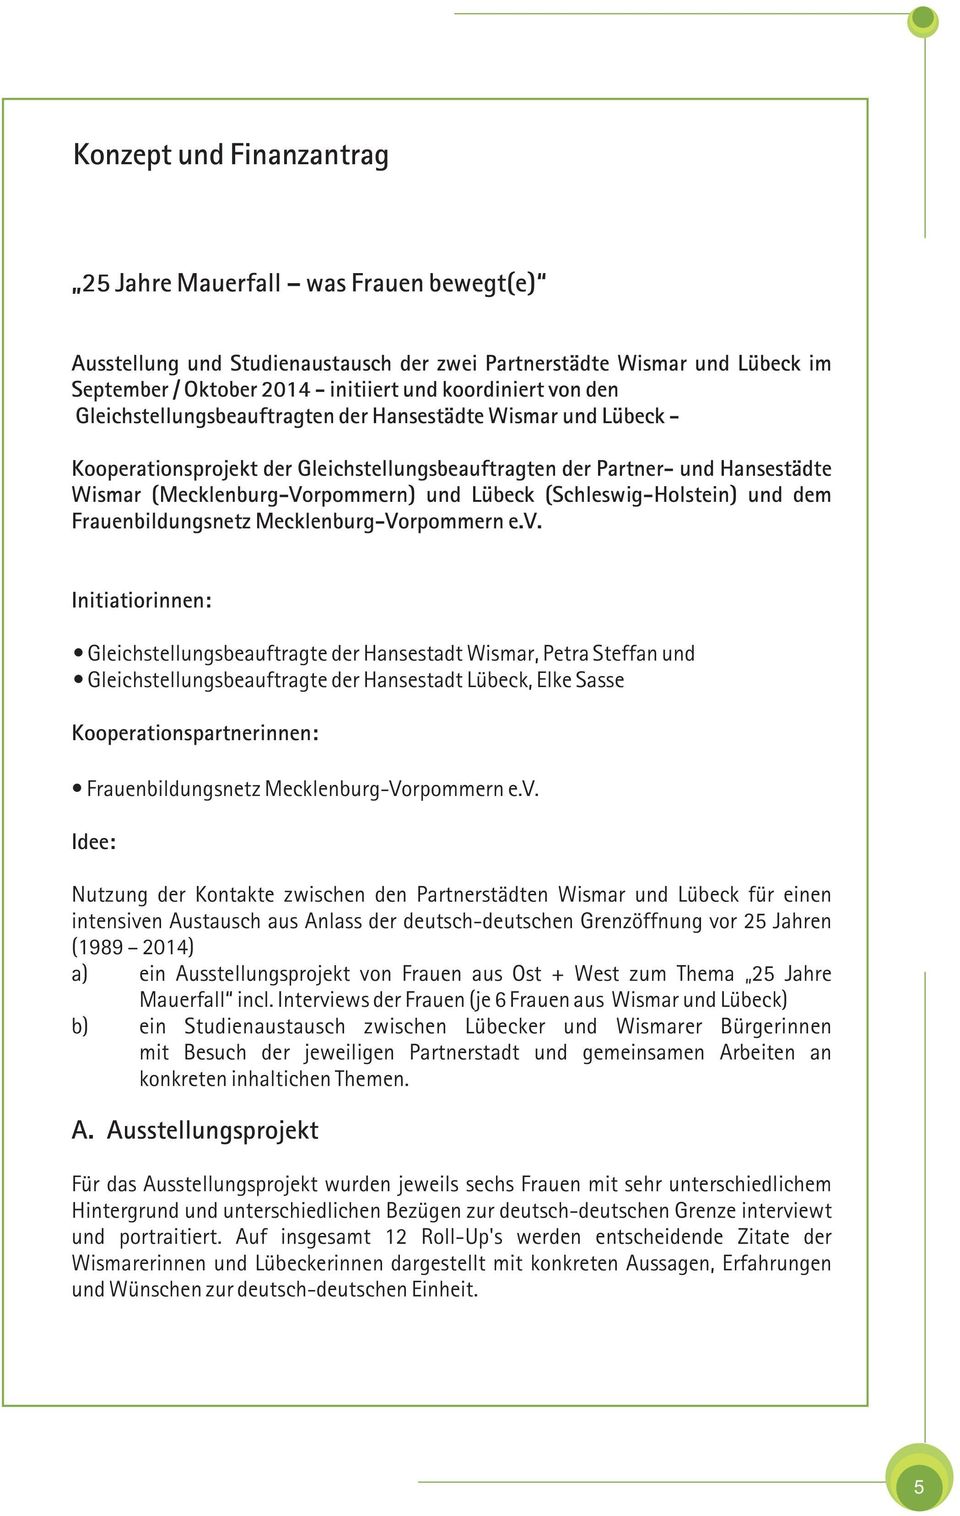 (Schleswig-Holstein) und dem Frauenbildungsnetz Mecklenburg-Vorpommern e.v.